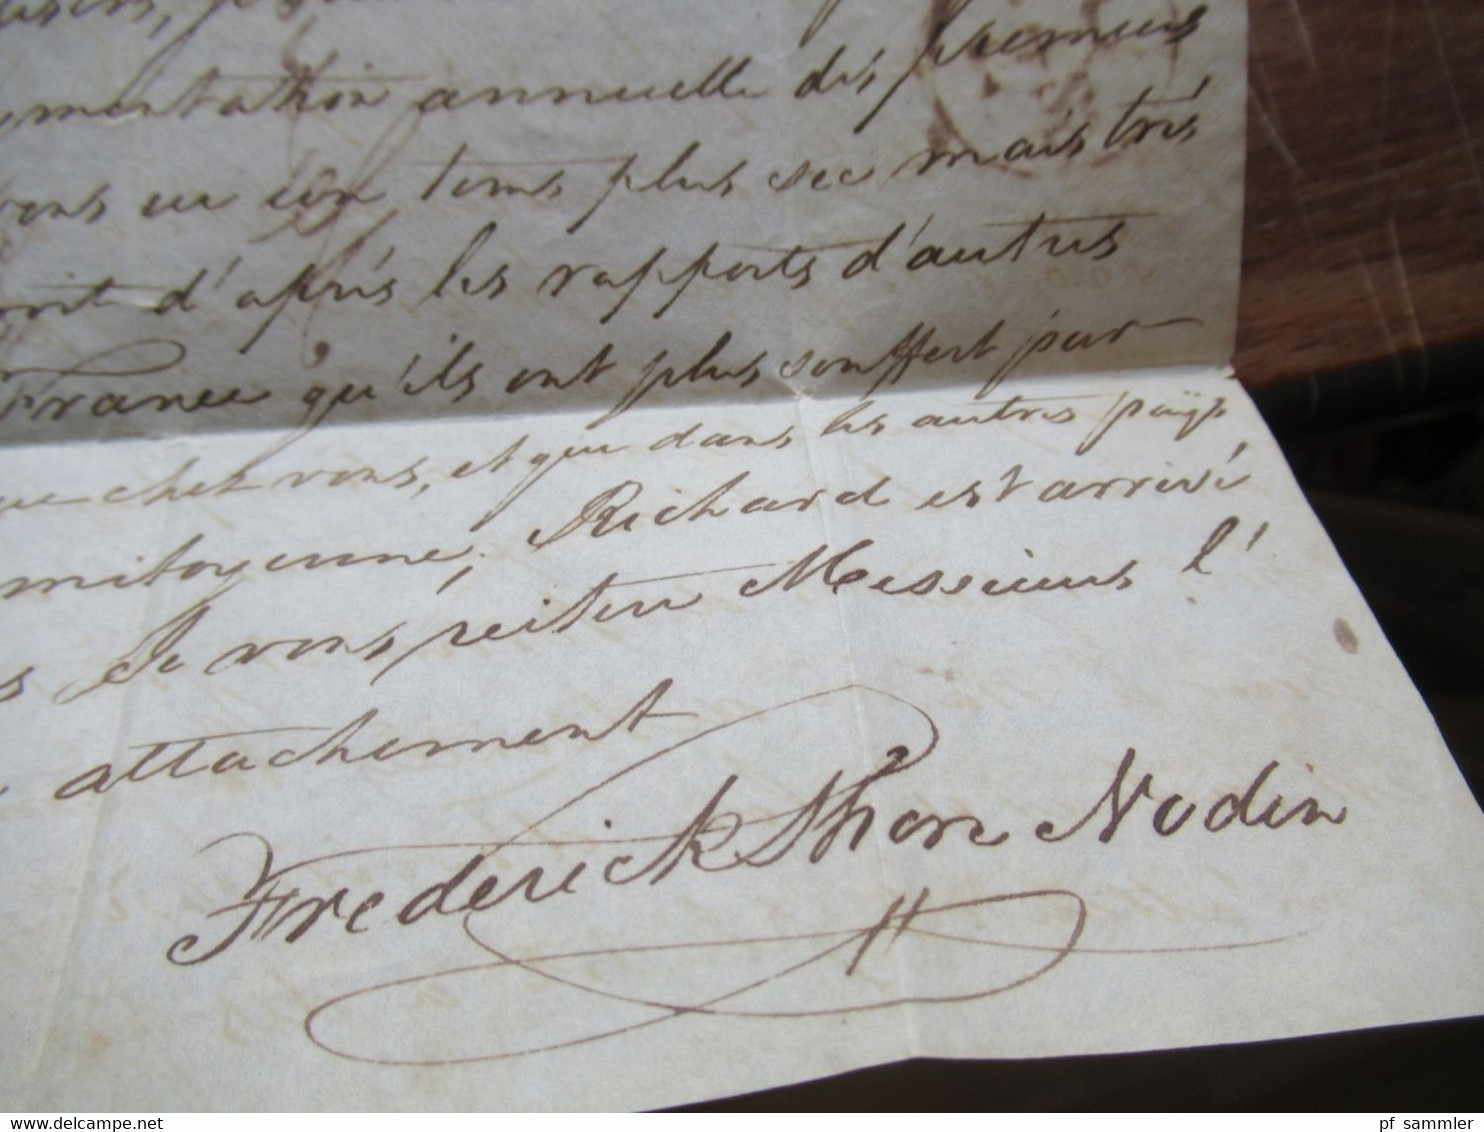 Frankreich 1829 Transitbrief aus England London roter L1 Angl. Est. handschriftlich per Estafette / Eilbrief nach Cognac